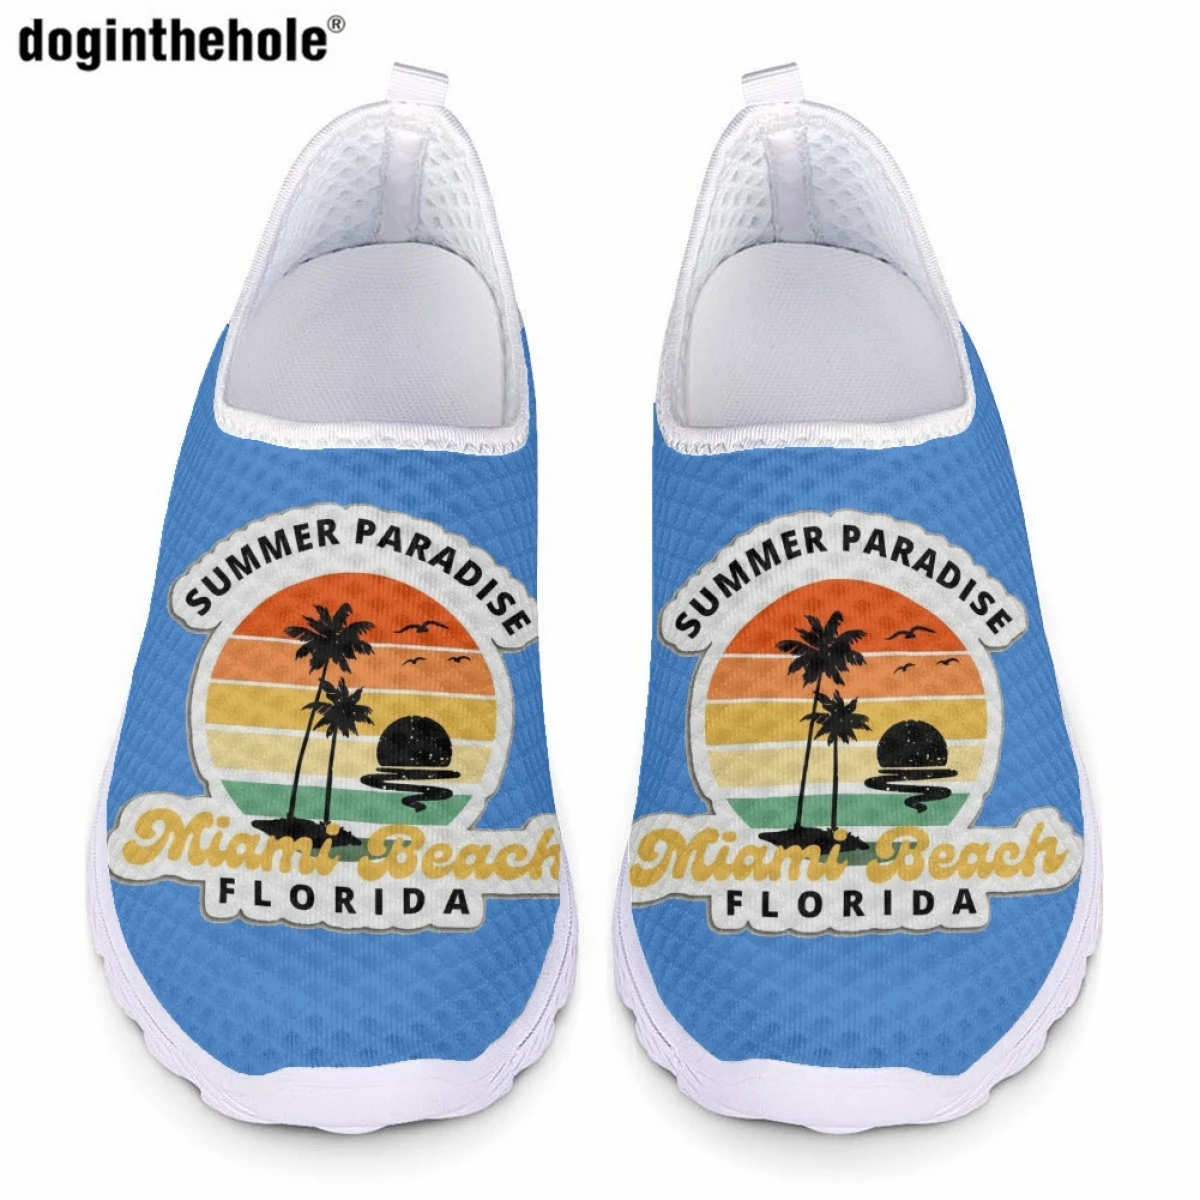 

Модные новые повседневные туфли Doginthehole на плоской подошве для женщин, популярные летние легкие дышащие сетчатые туфли с принтом Уэста-Пальма-пляжа, Флориды